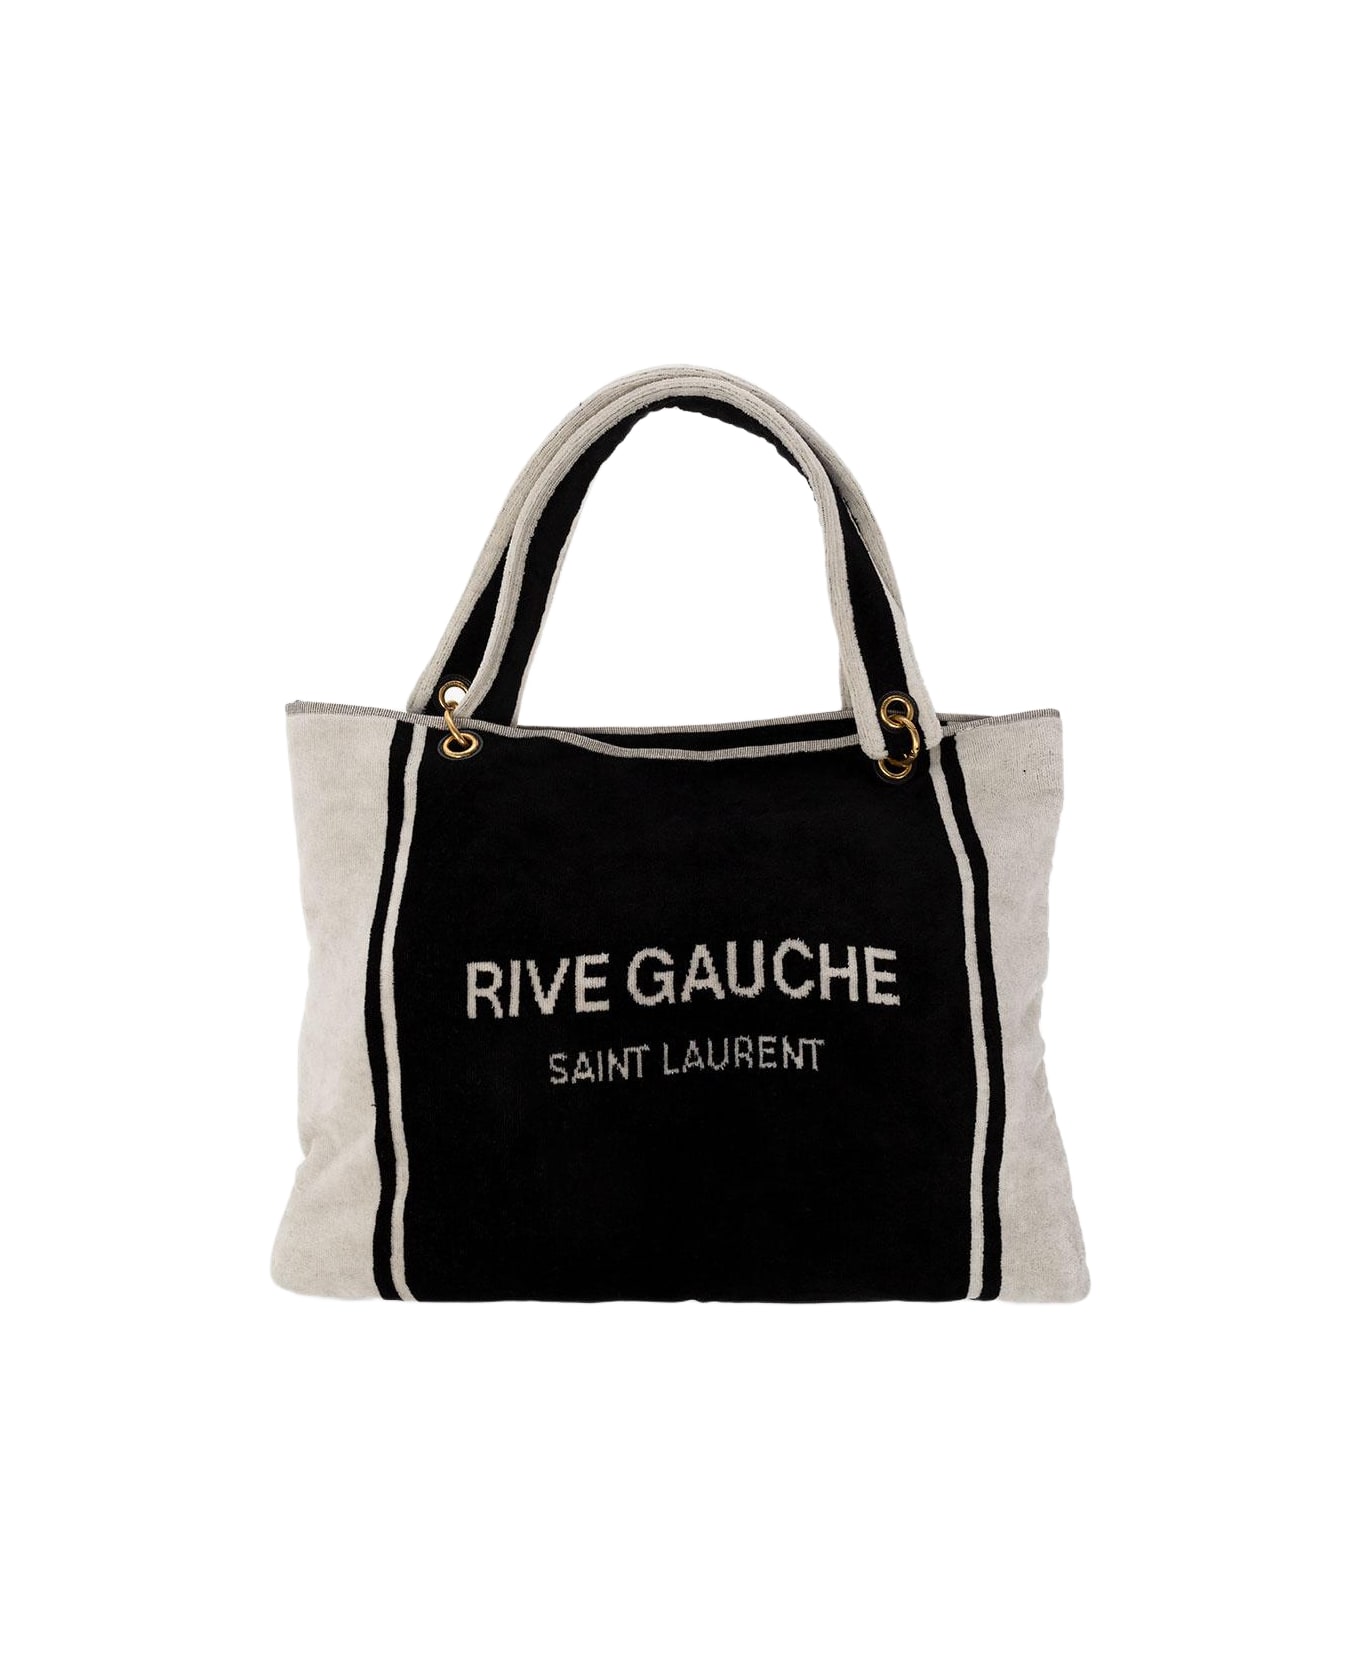 Saint Laurent Rive Gauche Tote - Nero/bianco/nero